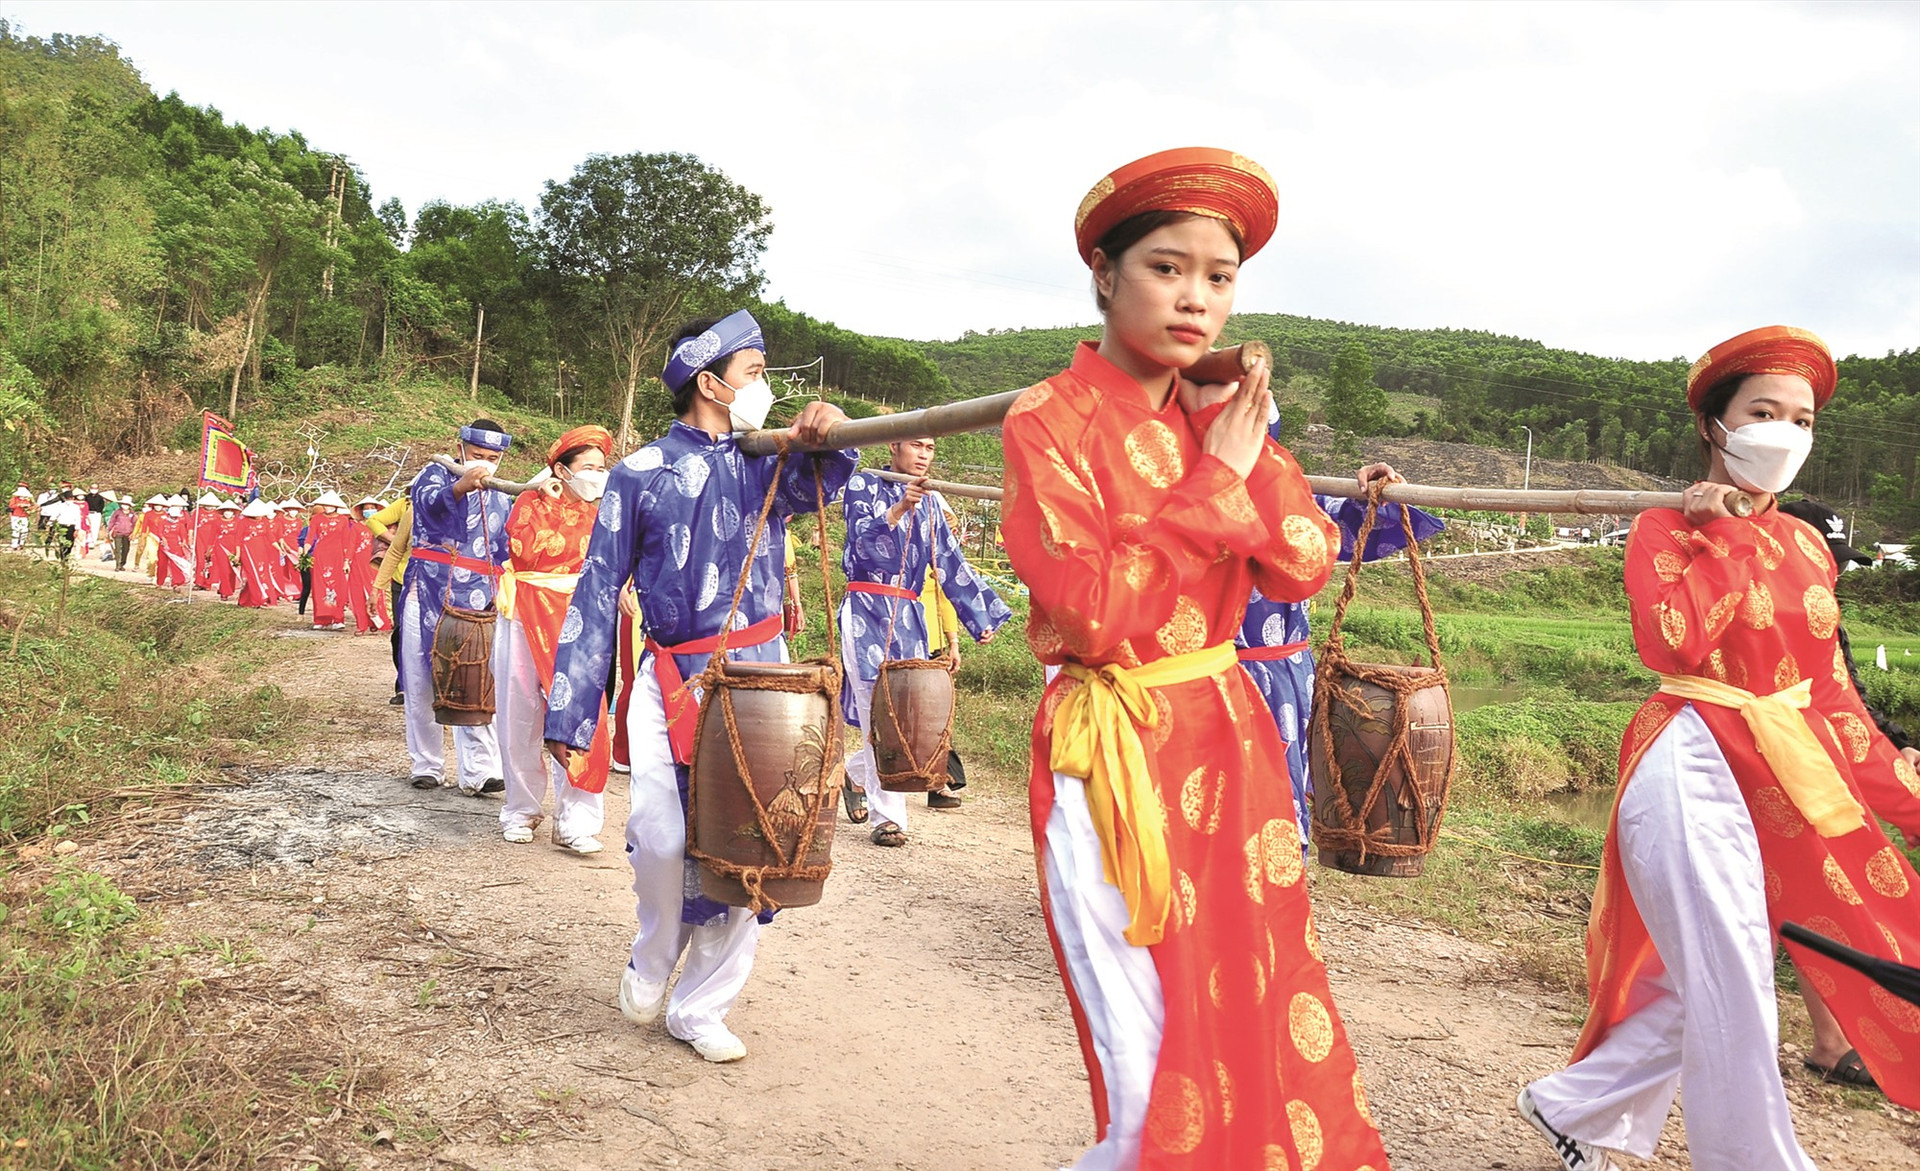 Lễ rước nước là nghi lễ đặc sắc trong Lễ hội Bà Thu Bồn. Trong ảnh: Các thanh niên xã Quế Trung tham gia lễ rước nước. Nước được lấy từ di tích Giếng Bà.